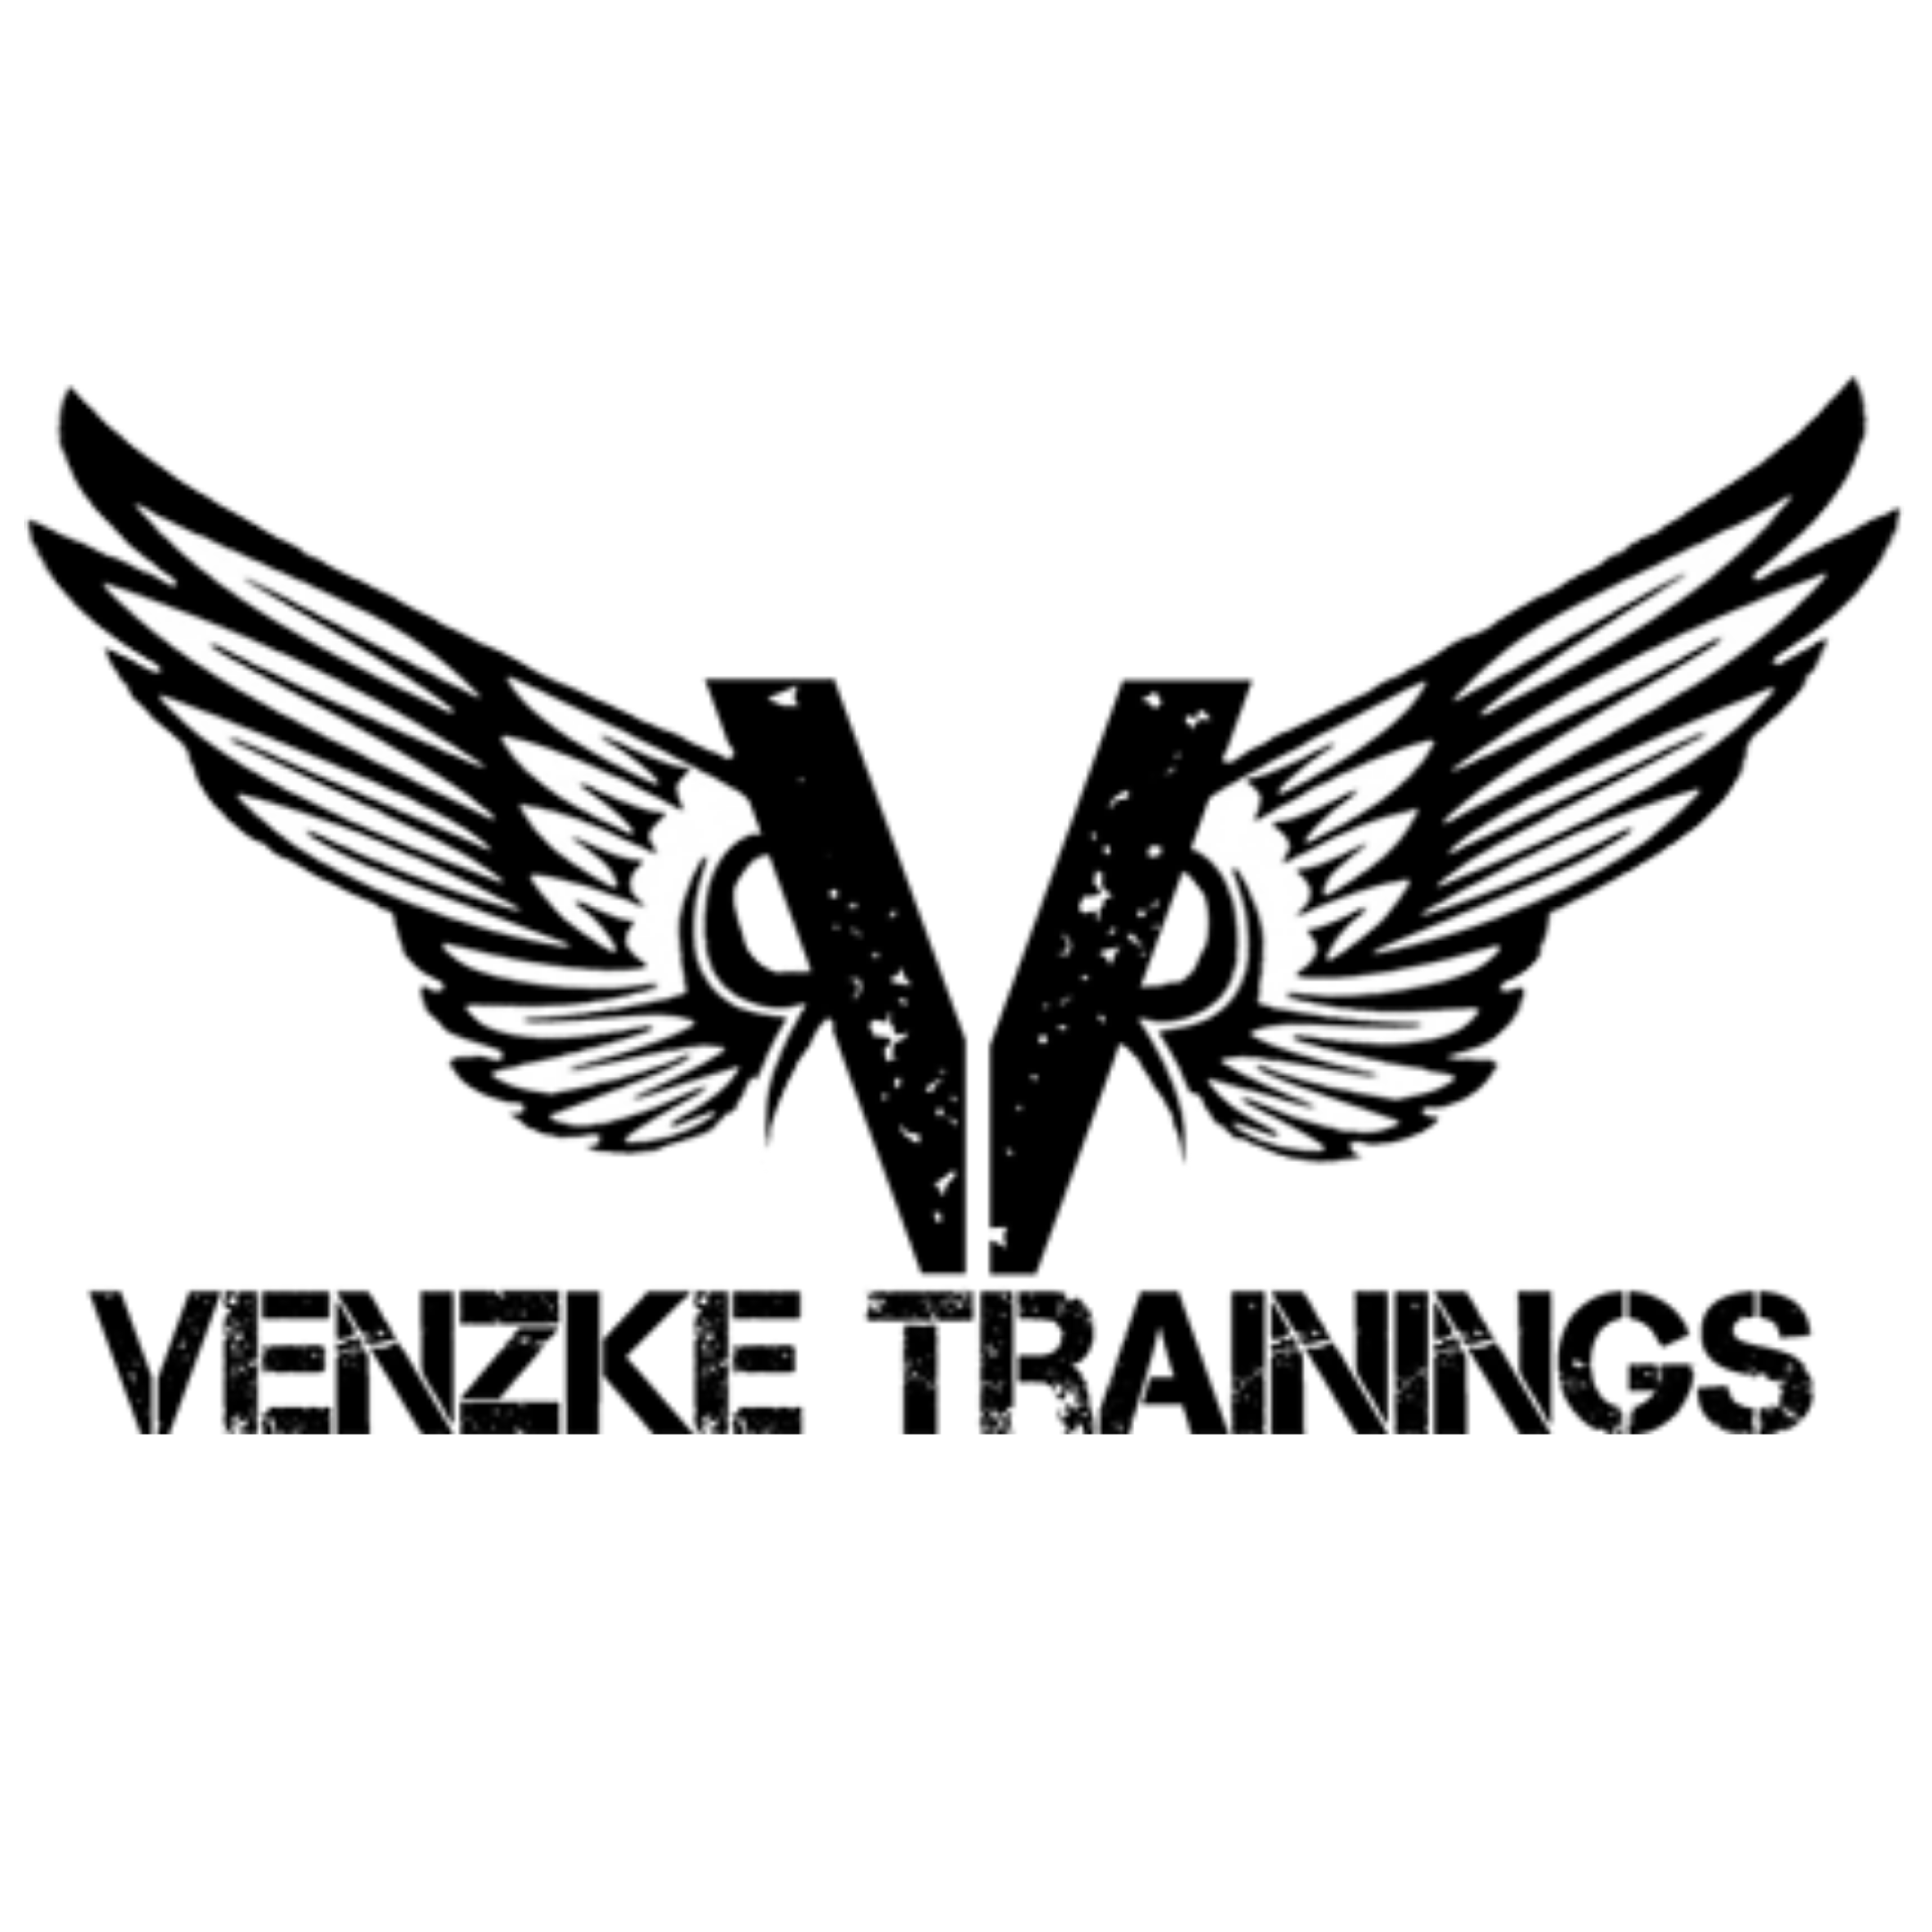 Venzke Trainings in Kornwestheim